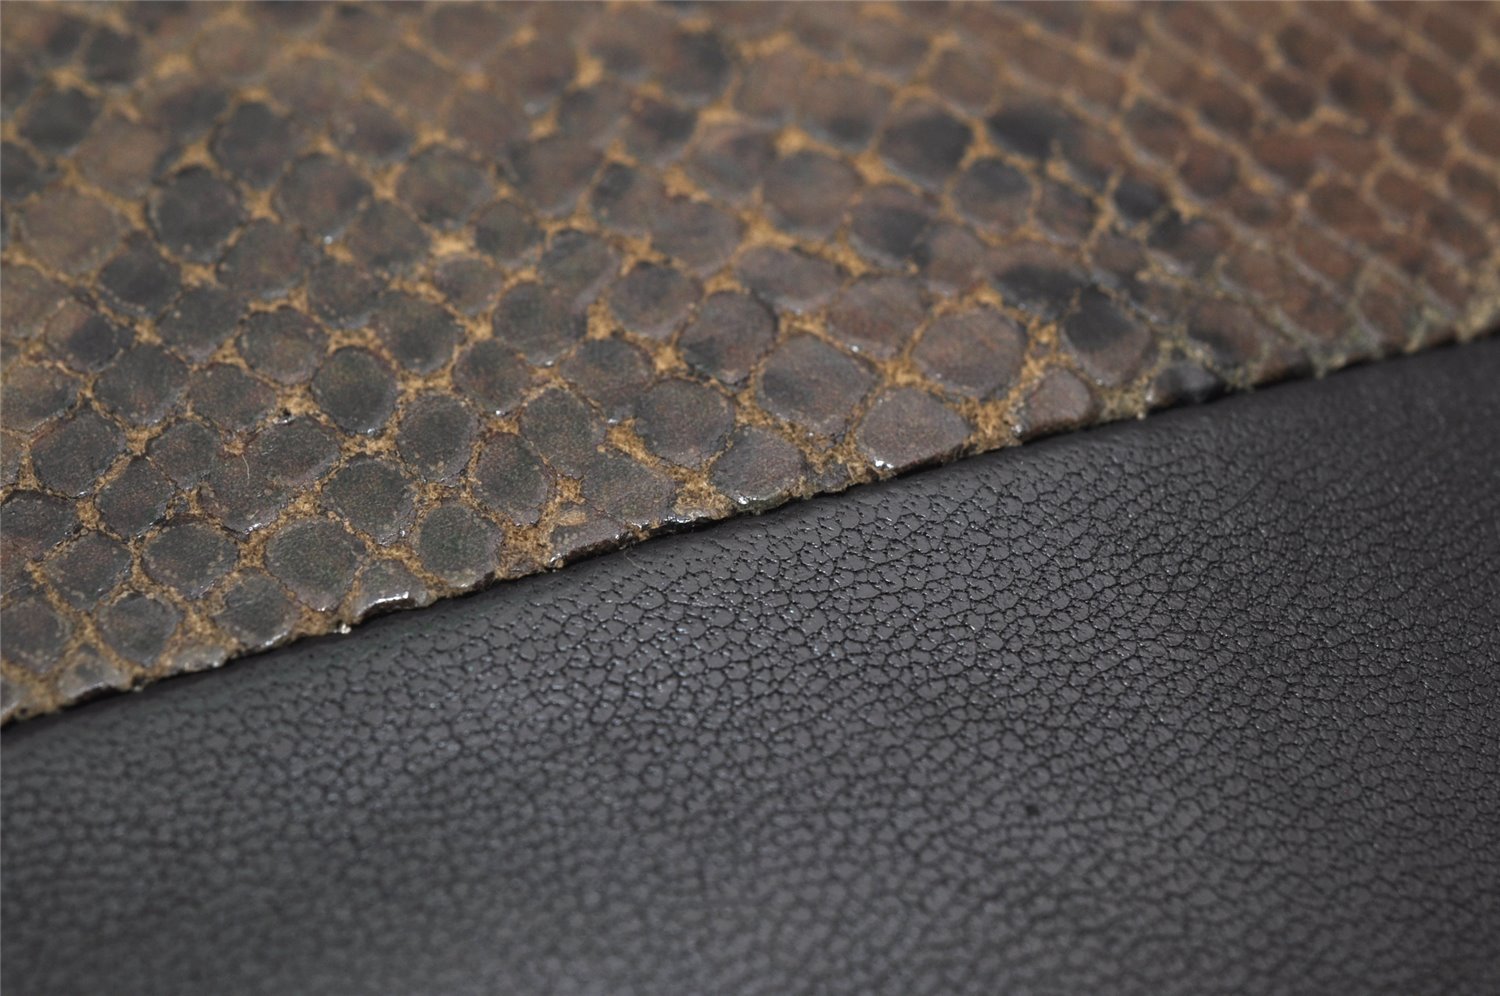 Authentic CELINE Vintage Zip Long Wallet Purse Leather Black Brown Box 9597J